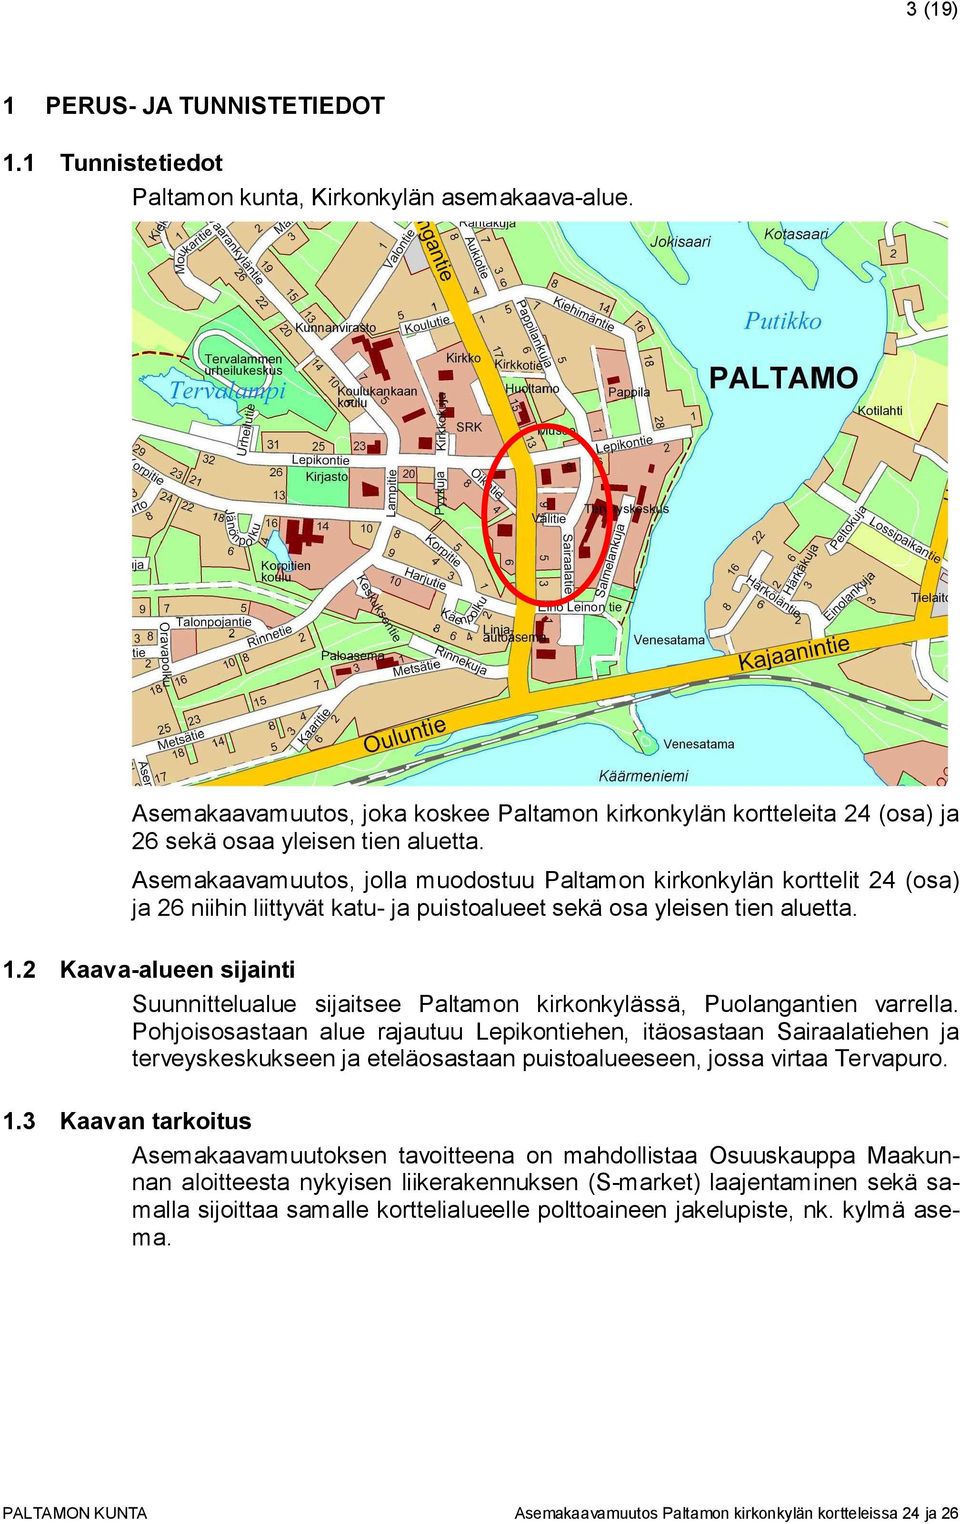 Asemakaavamuutos, jolla muodostuu Paltamon kirkonkylän korttelit 24 (osa) ja 26 niihin liittyvät katu- ja puistoalueet sekä osa yleisen tien aluetta. 1.